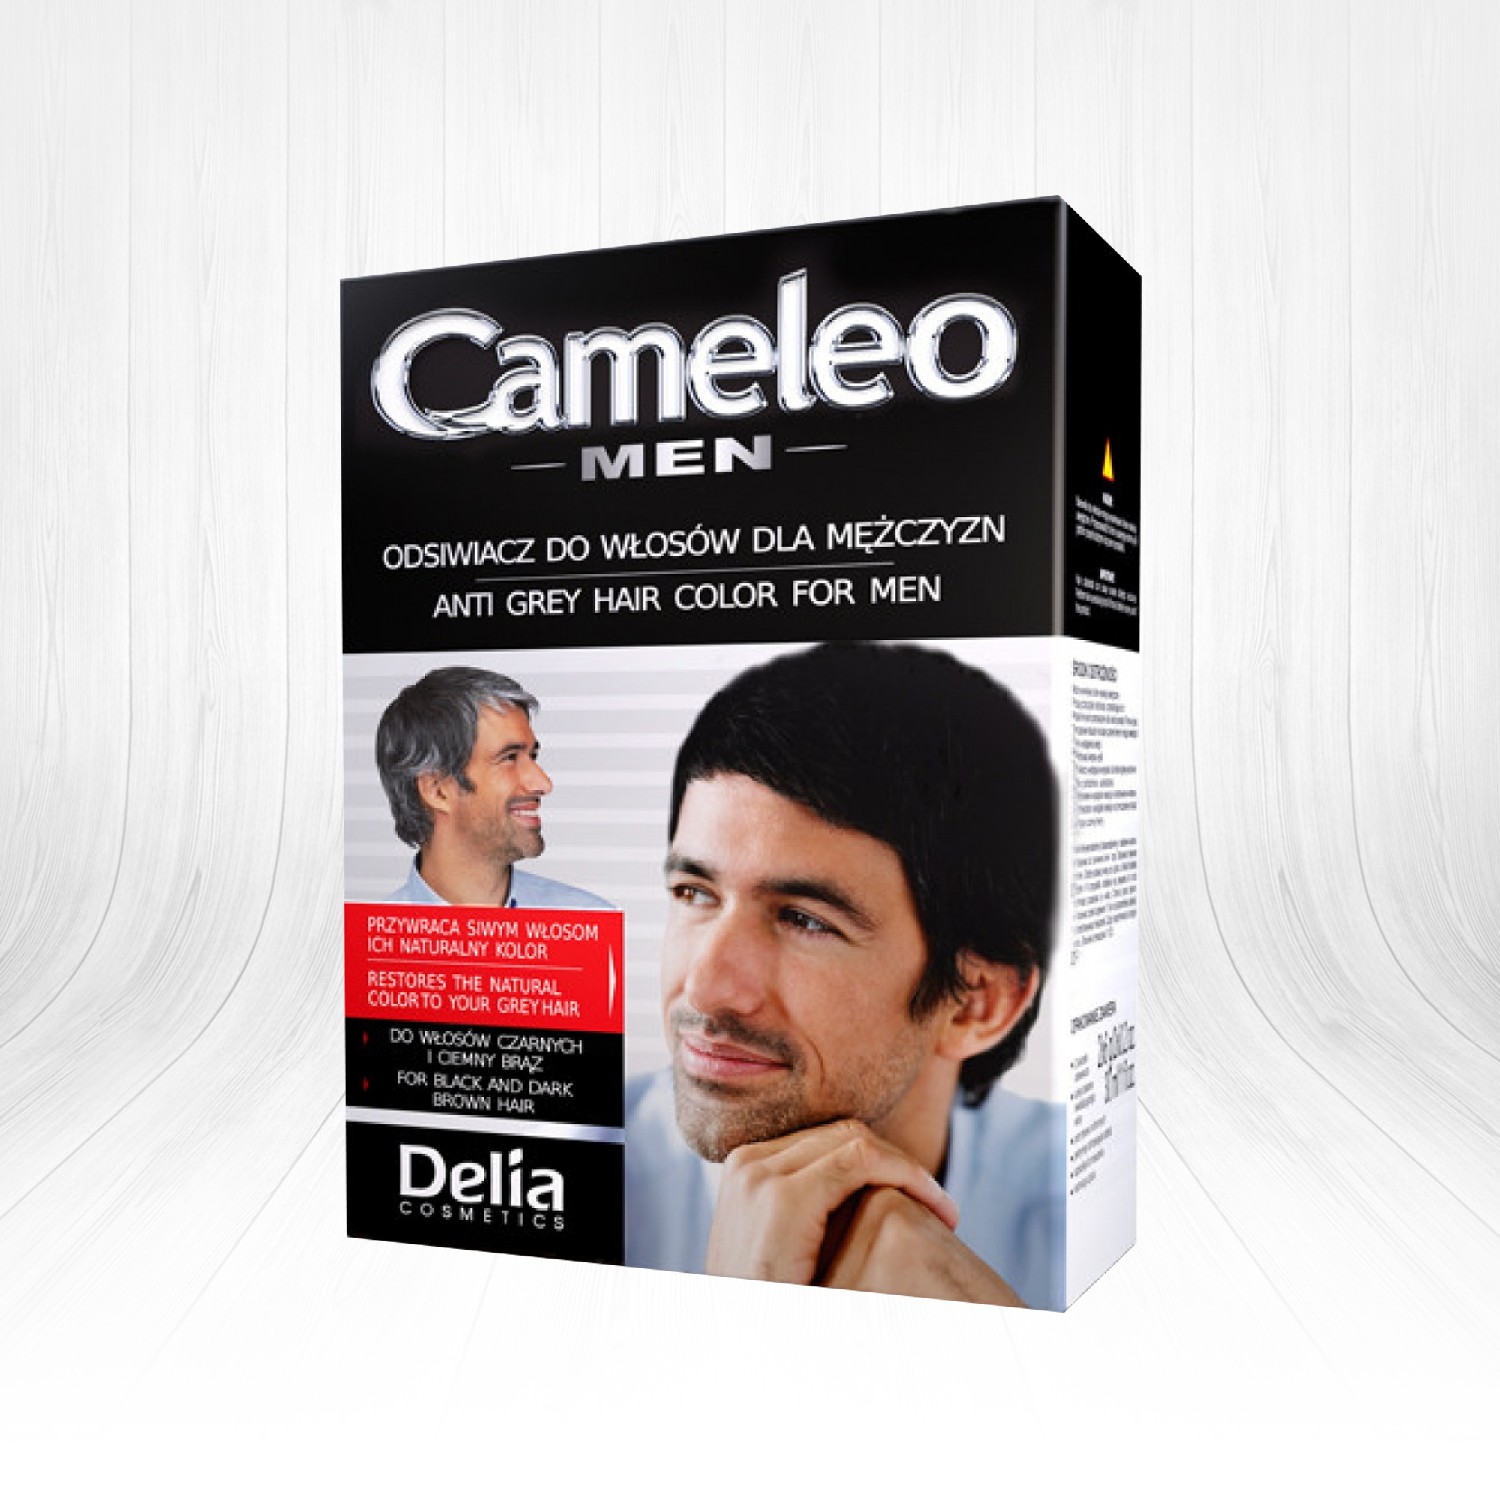 Delia Cameleo Men Anti ey Hair Siyah ve Koyu Kahve Saçlar İçin Renk Kırıcı Saç Boyası